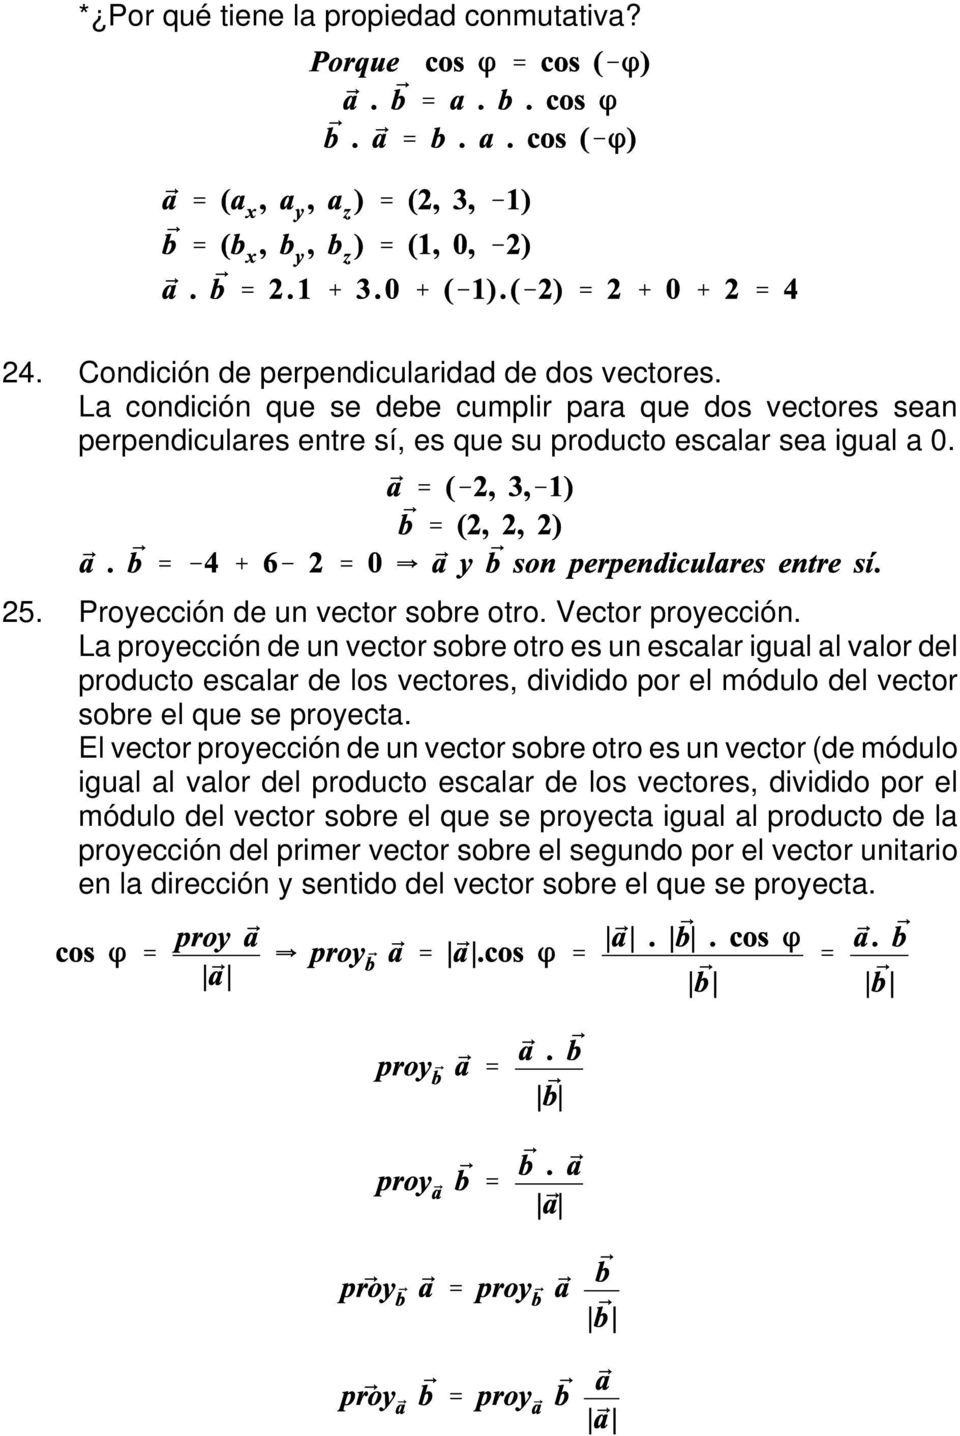 La proyección de un vector sobre otro es un escalar igual al valor del producto escalar de los vectores, dividido por el módulo del vector sobre el que se proyecta.